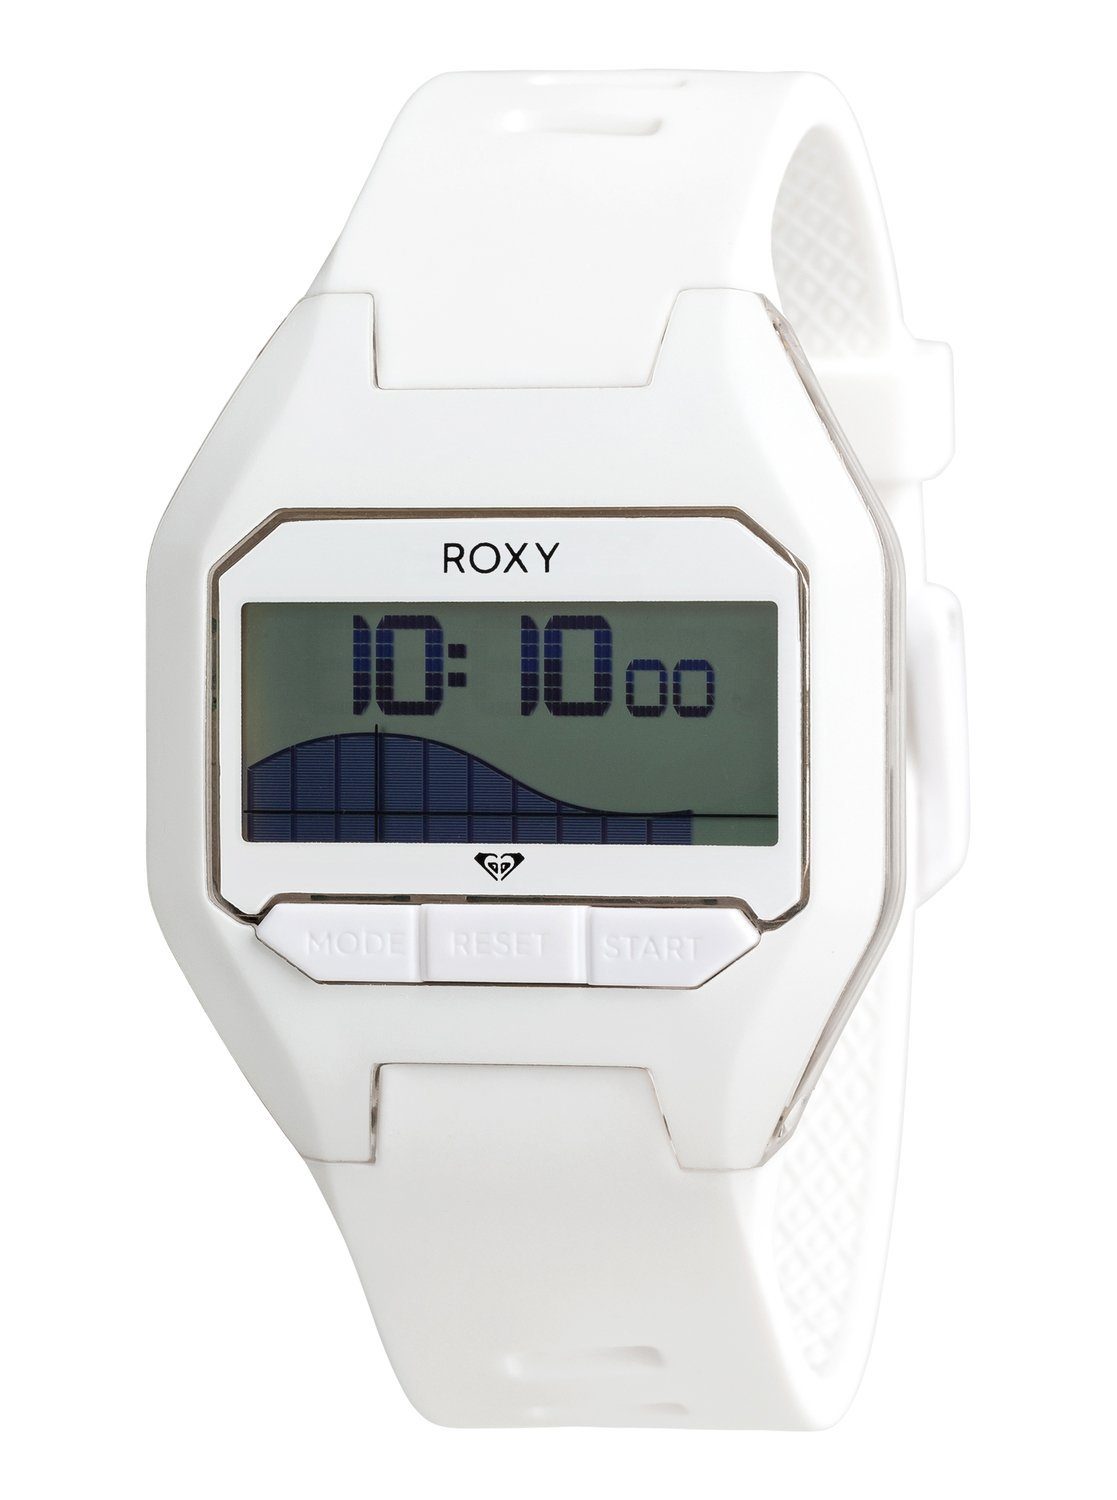 verwijderen Waardeloos kapperszaak Roxy - Slimtide - Digitaal horloge voor Dames snel gevonden | OTTO